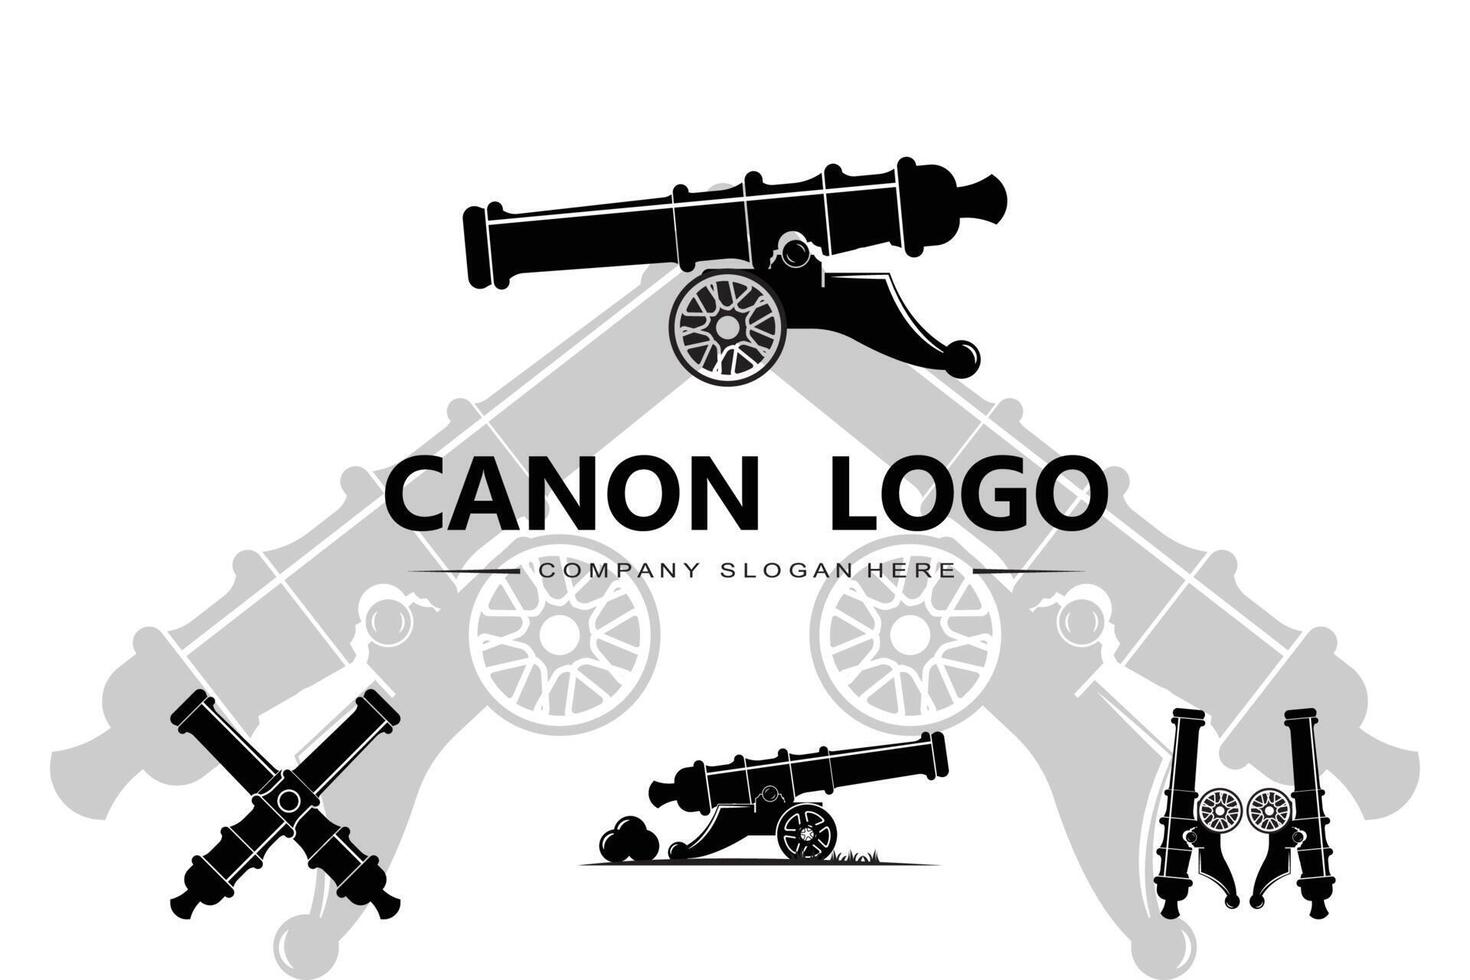 icono de vector de logotipo de cañón, arma de guerra del ejército, bomba, dispositivo explosivo, guardia real, vintage retro